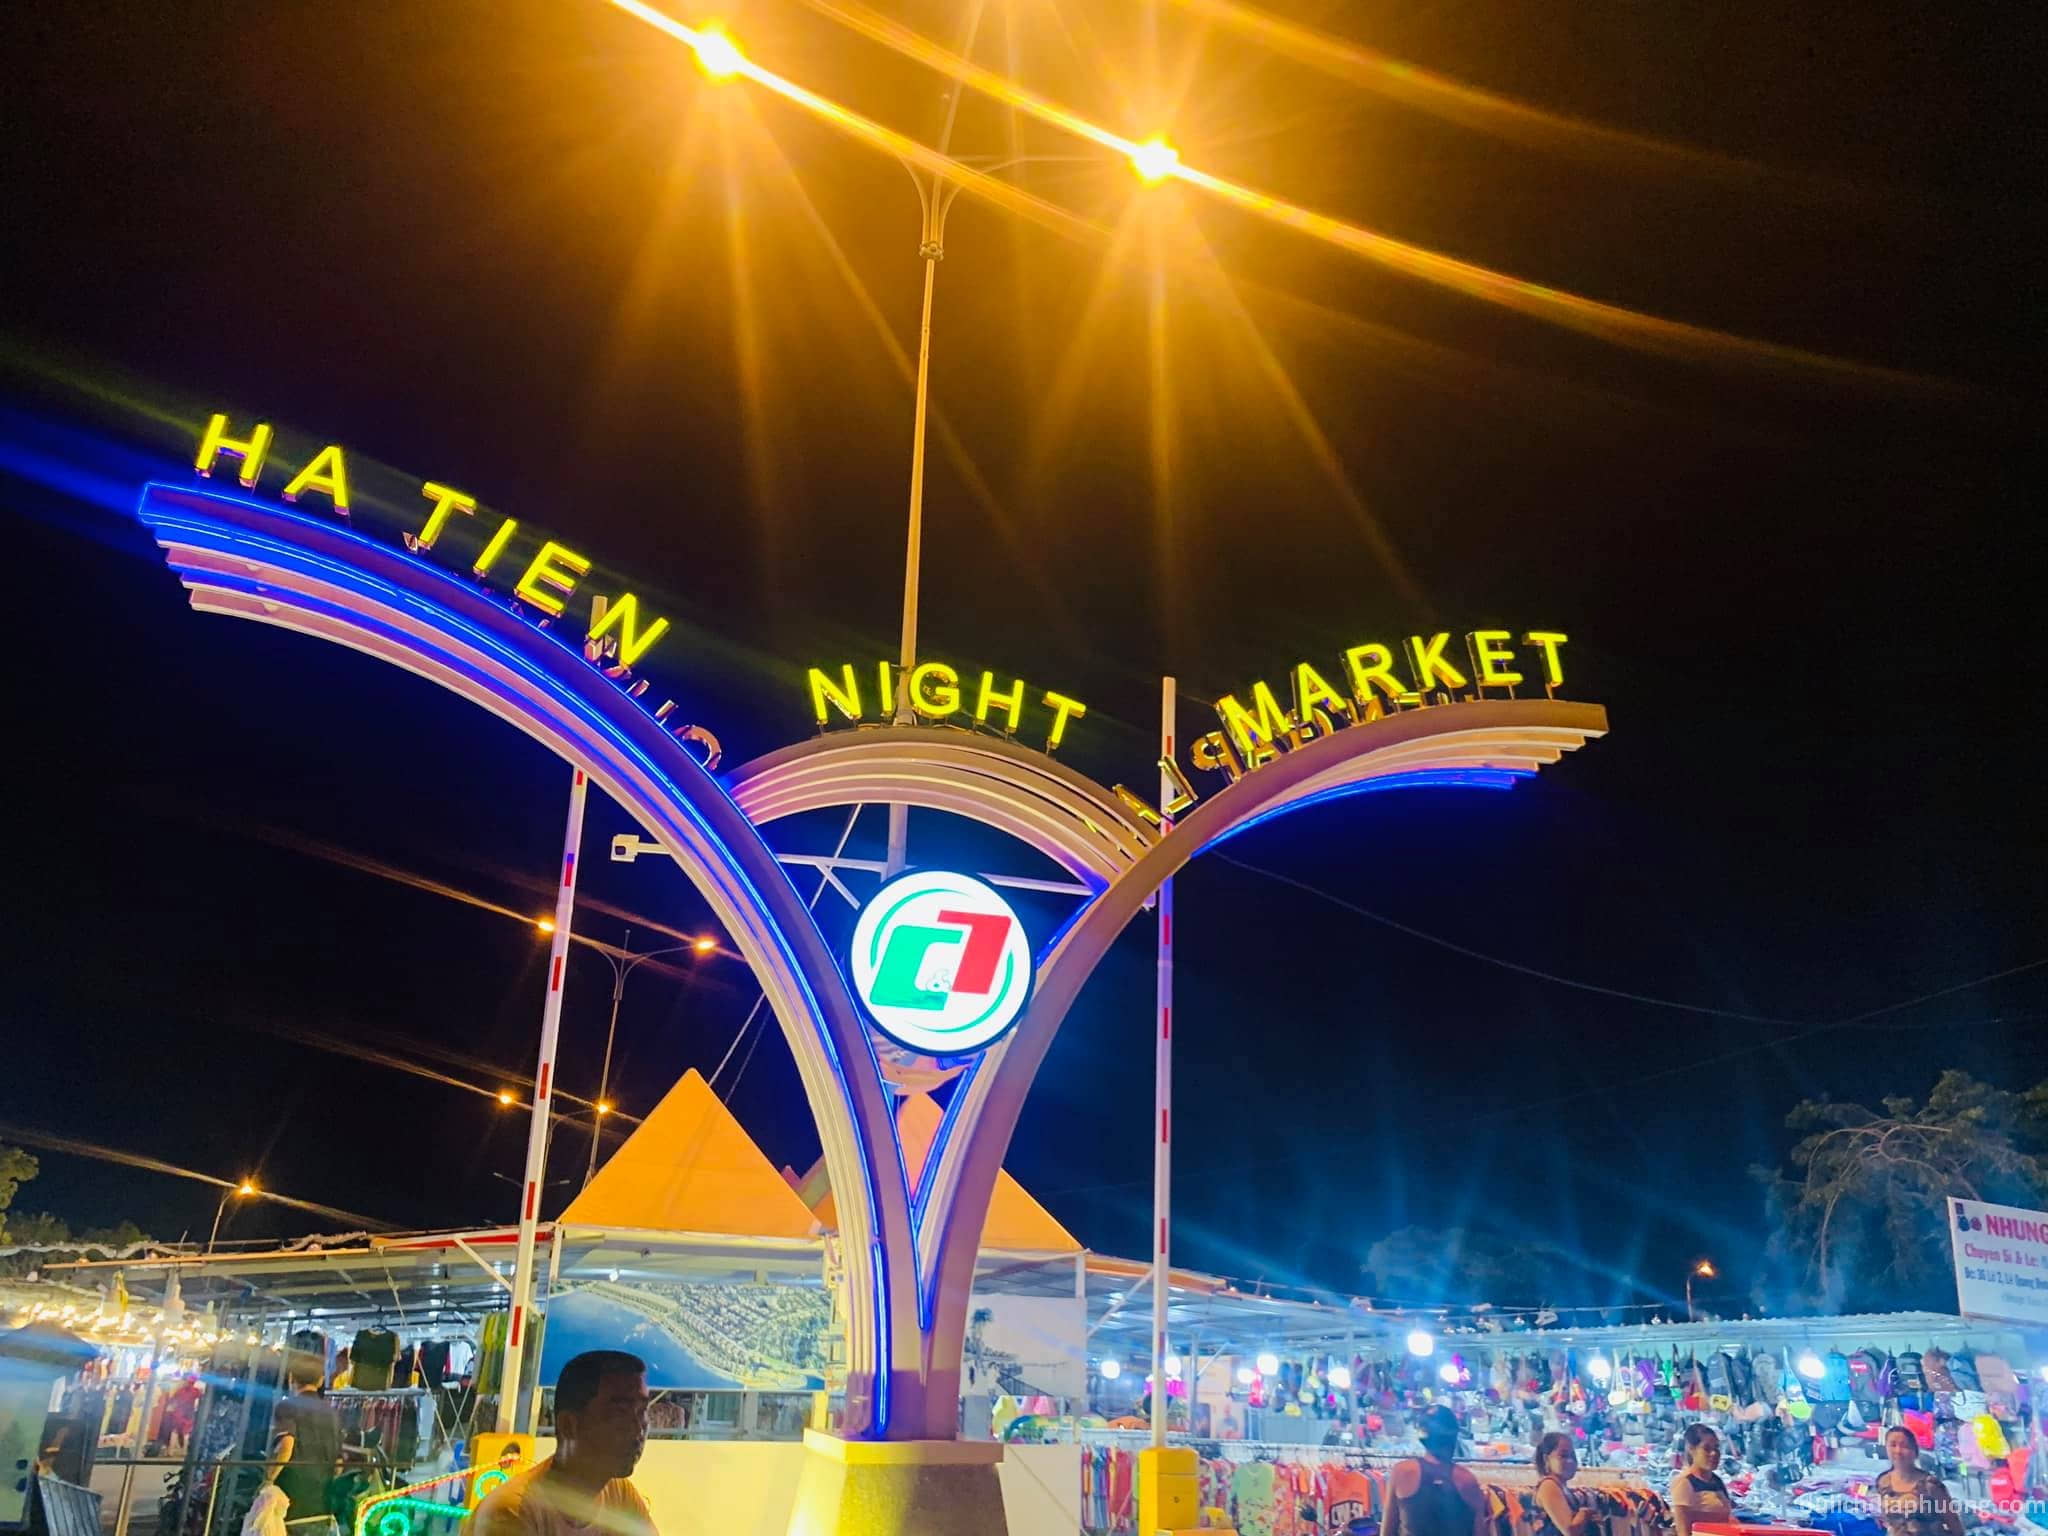 Du lịch Chợ đêm Hà Tiên 